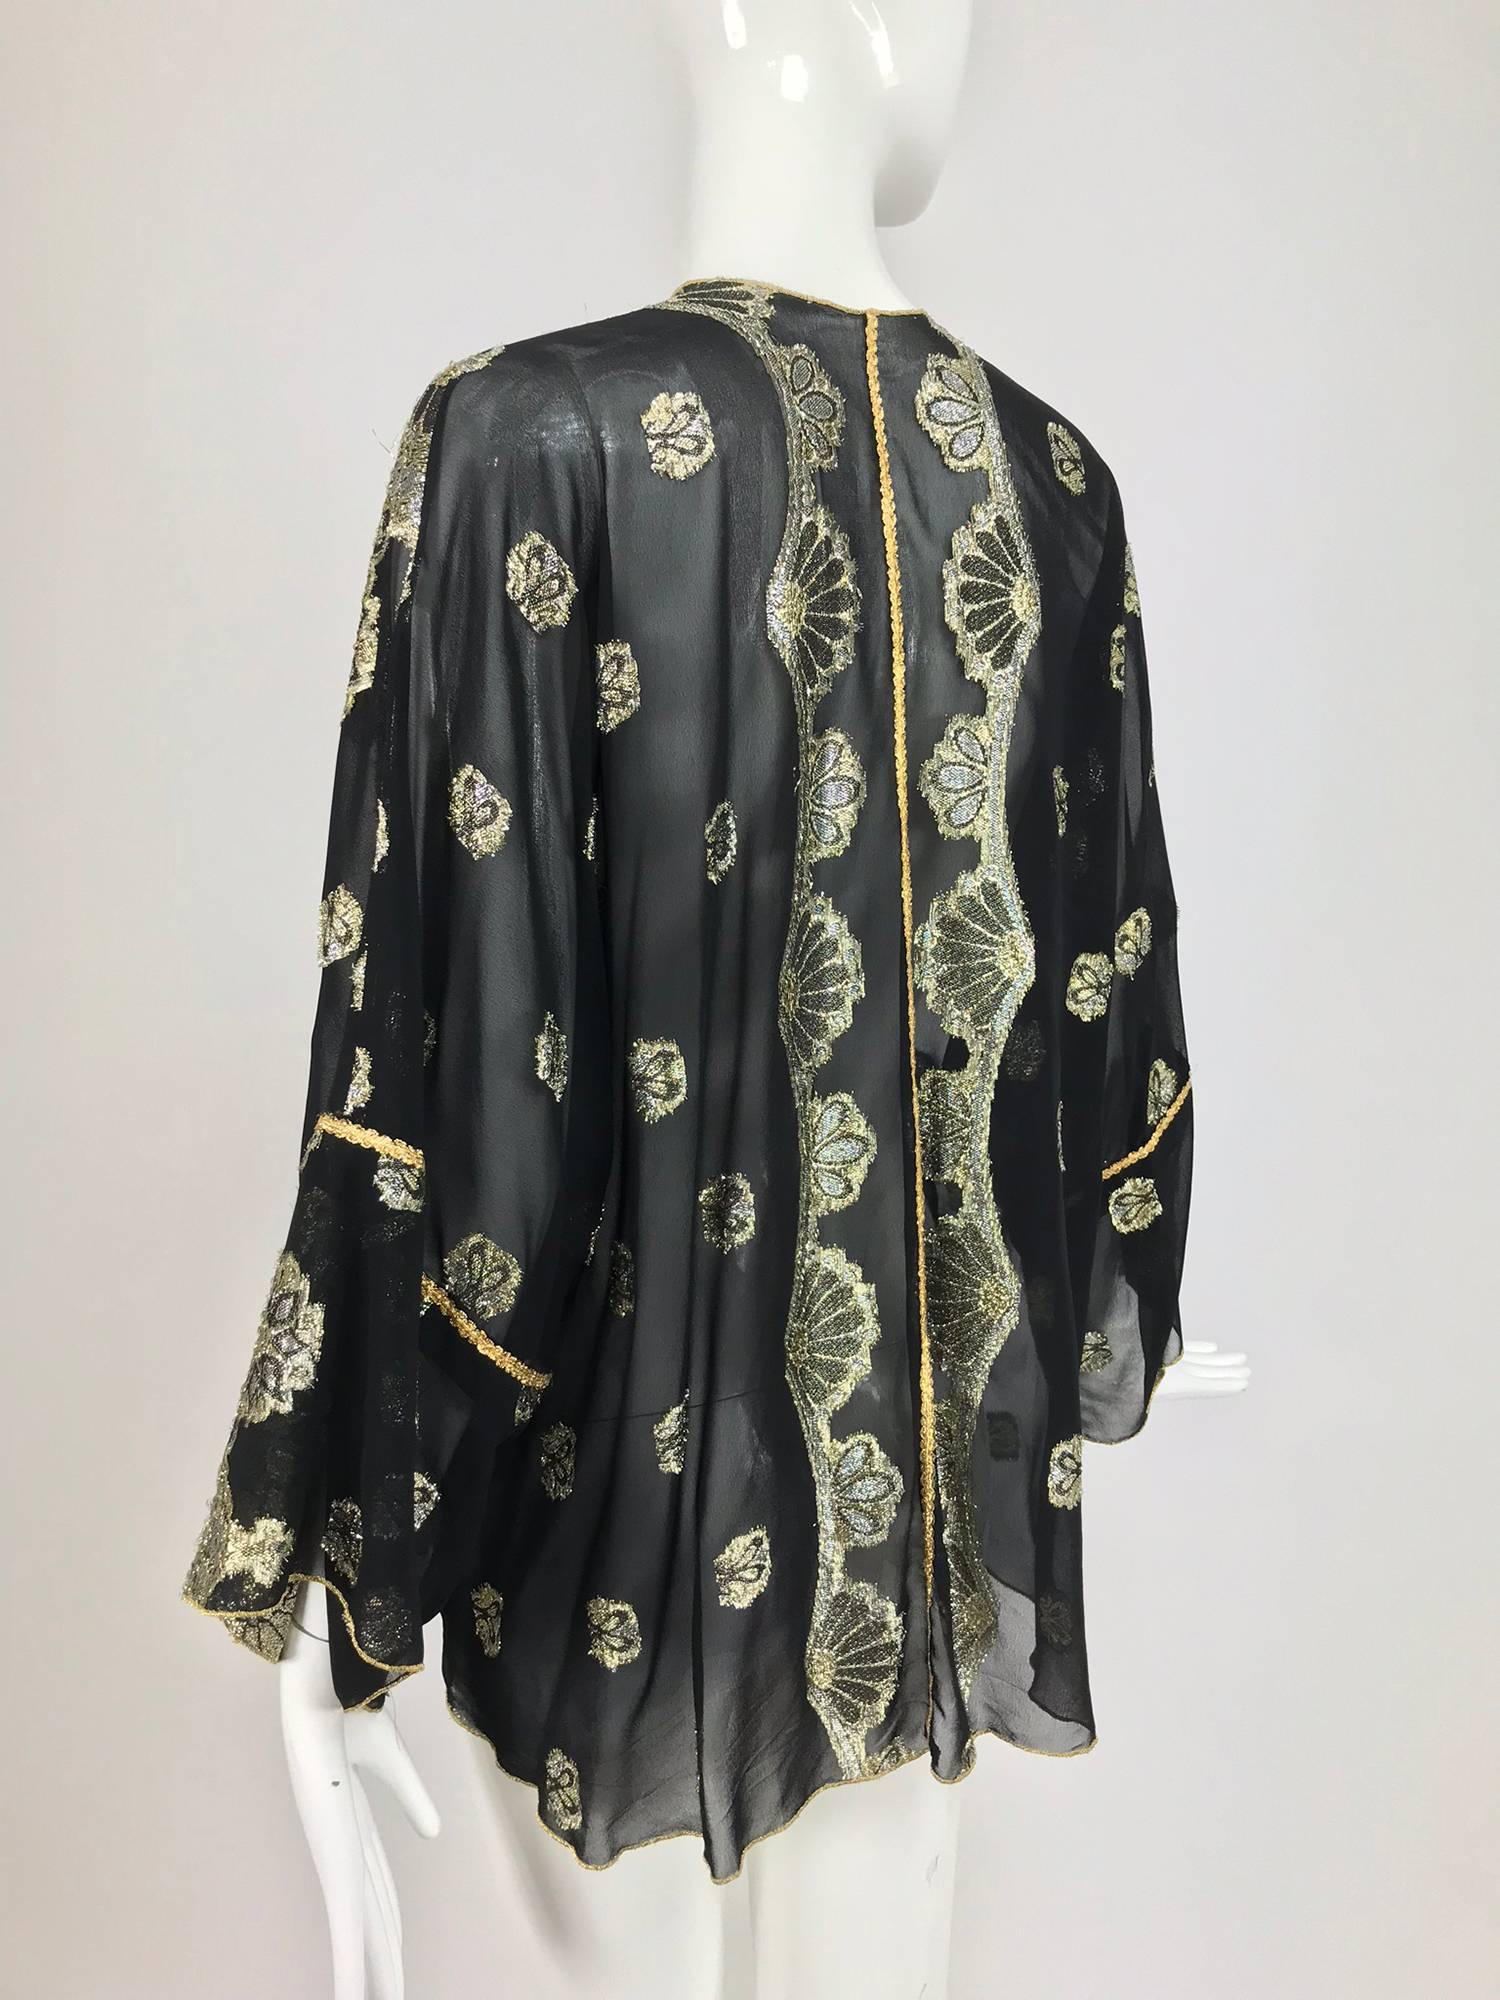 Vintage black chiffon silver and gold metallic kimono jacket 1970s 1